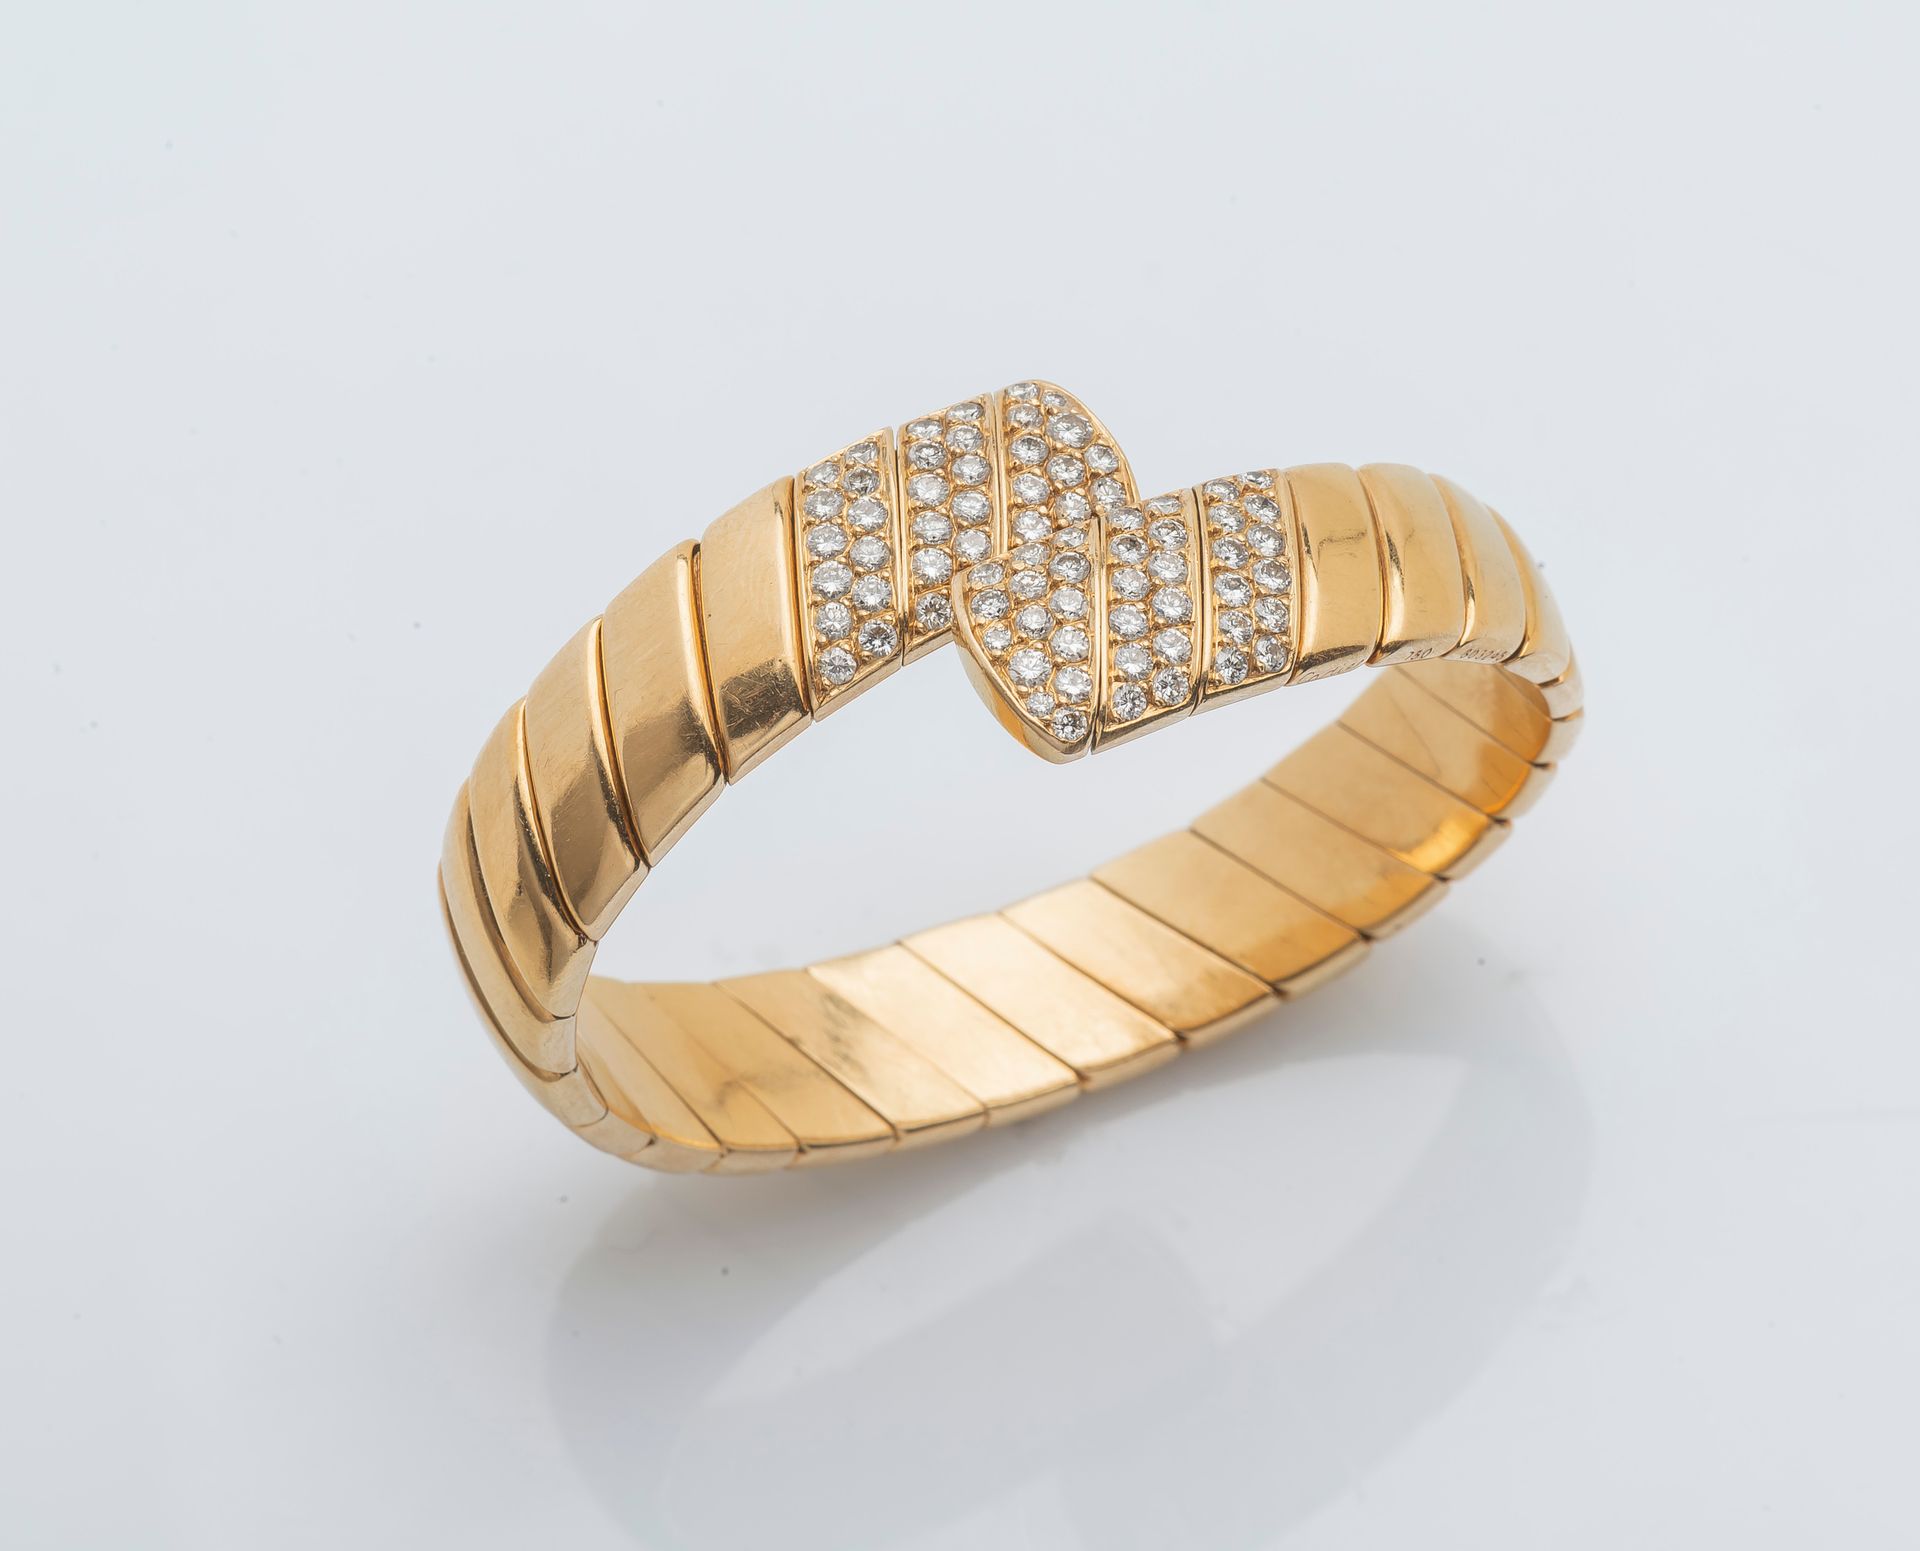 CARTIER 一条18K黄金（750 ‰）的开放和灵活的扁平手链，有一个扭曲的平坦的加德隆设计，两端镶嵌着明亮式切割钻石。有签名和编号的。

直径：5.5厘米&hellip;